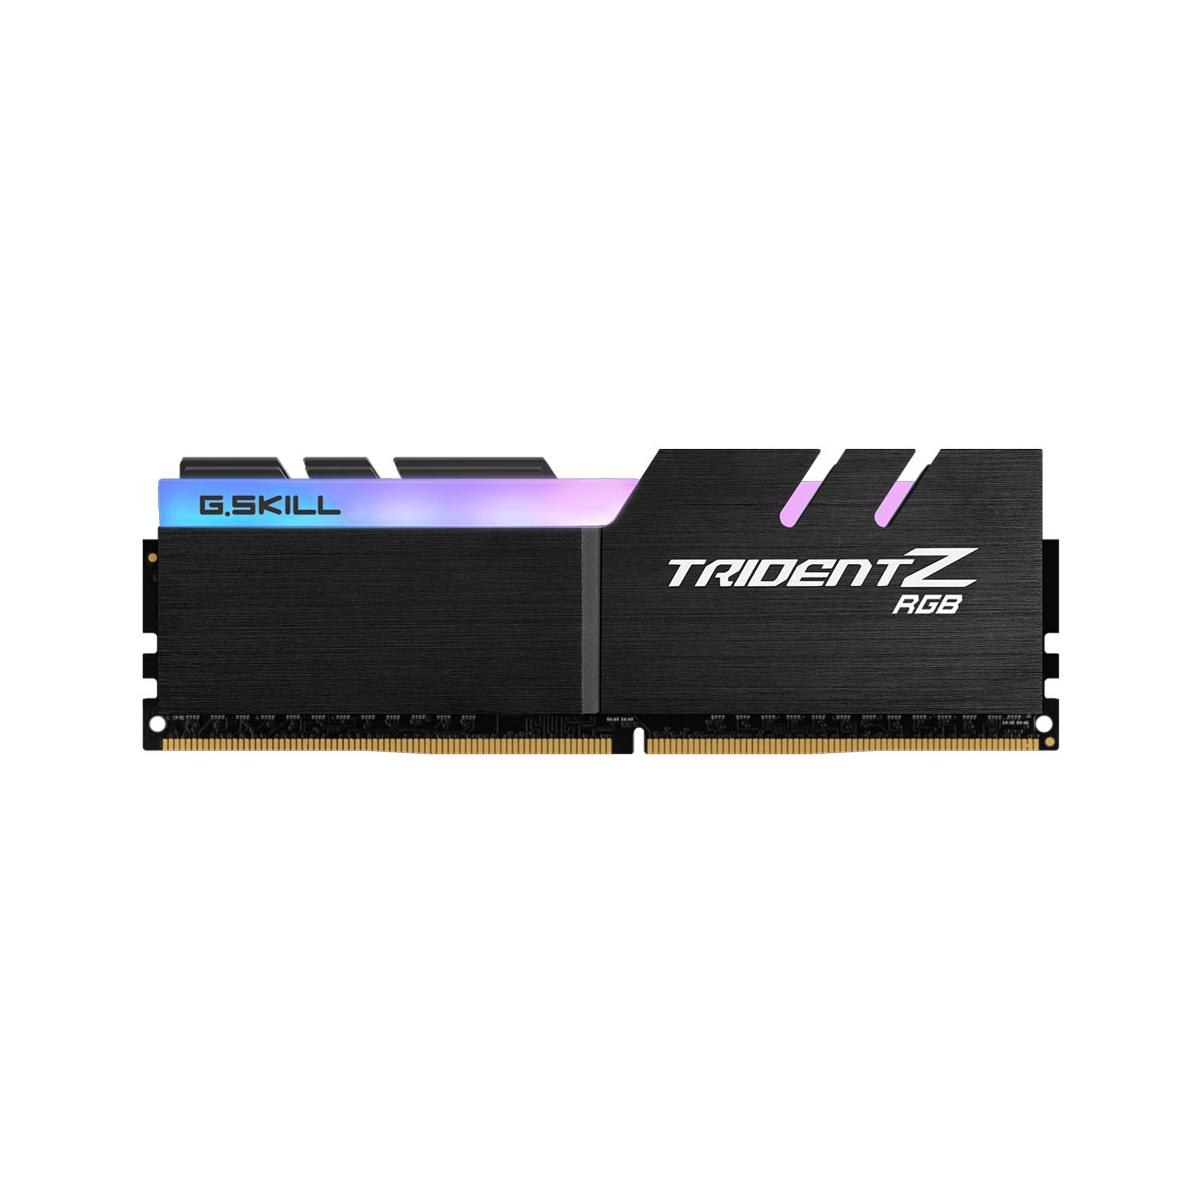 MEMORIA DIMM DDR4 G.SKILL (F4-3200C16S-8GTZR) 8GB(1X8GB) 3200MHZ, TRIDENT Z RGB - G.SKILL